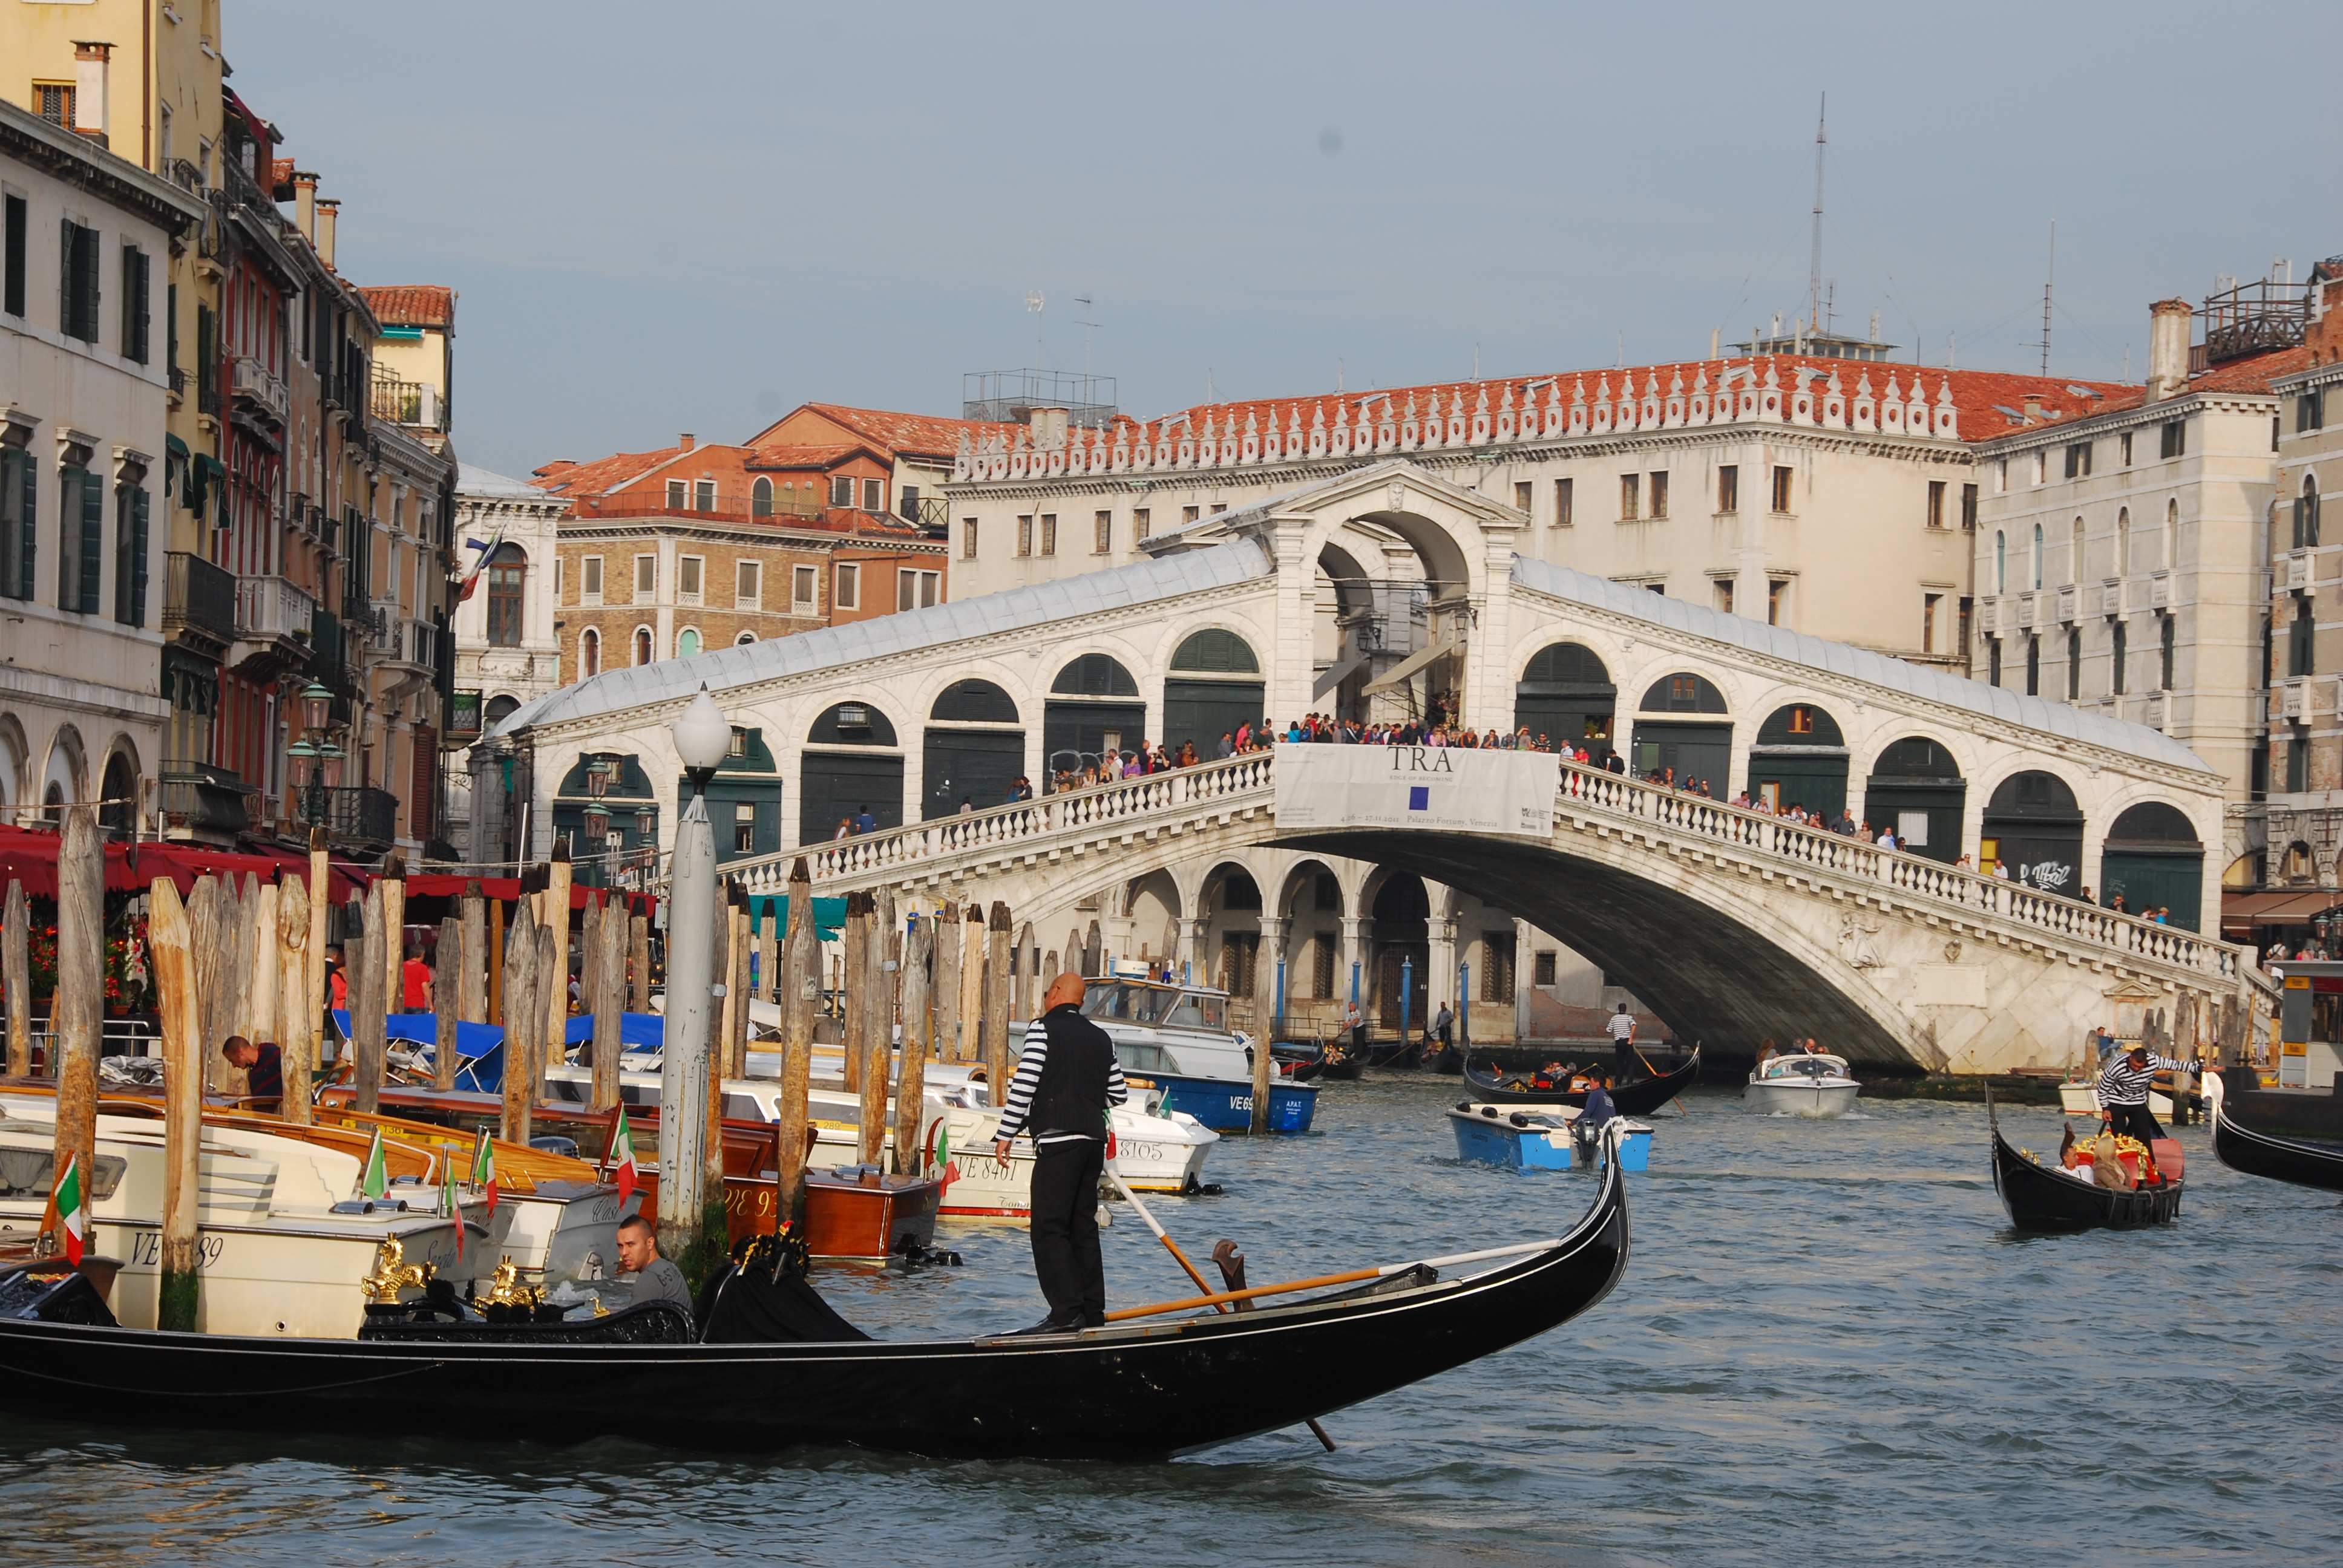 2019里亚托桥_旅游攻略_门票_地址_游记点评,威尼斯旅游景点推荐 - 去哪儿攻略社区